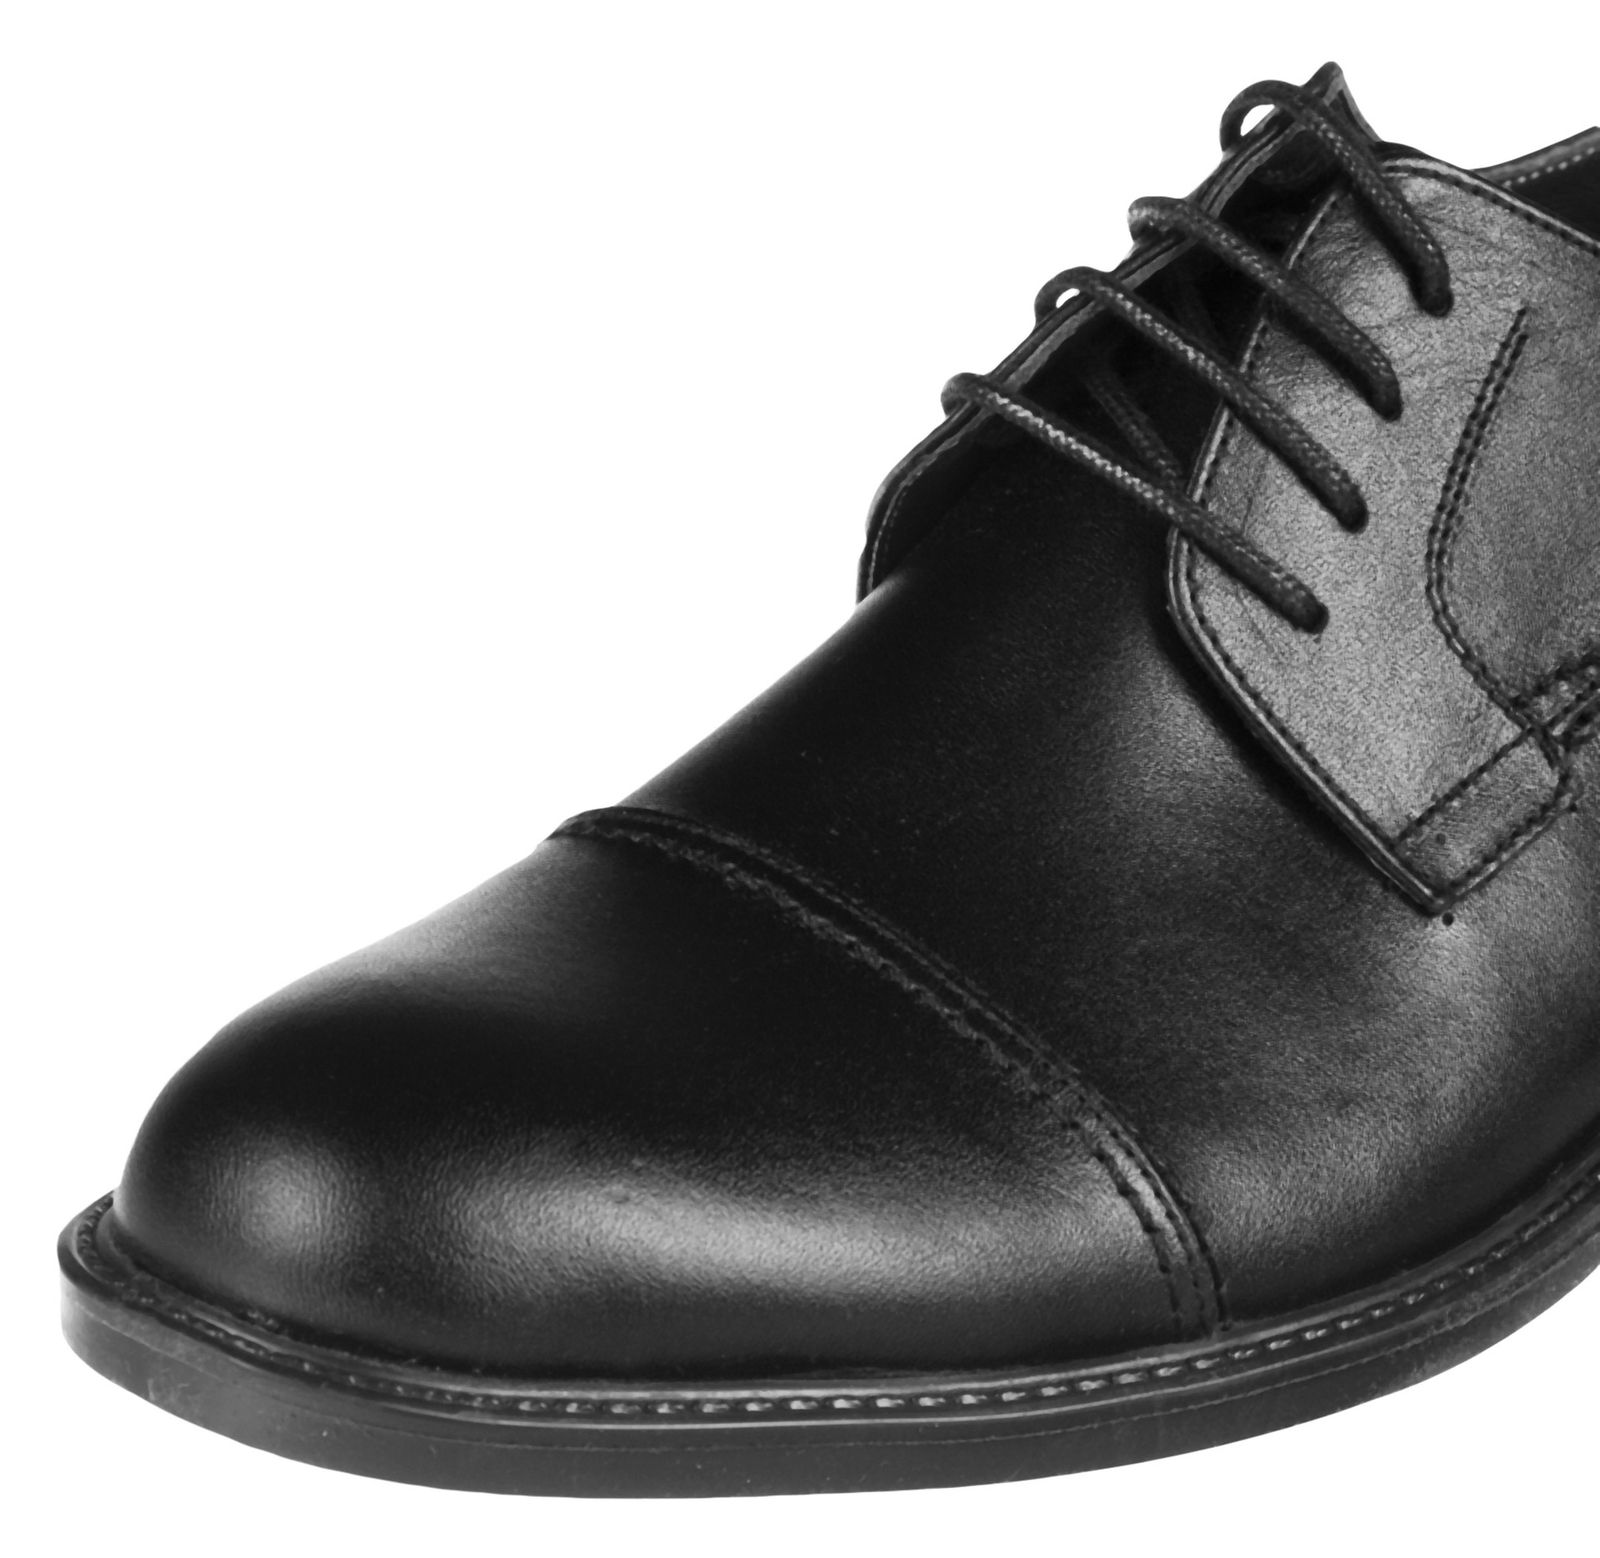 کفش مردانه دلفارد مدل 7219c503-101 - مشکی - 8